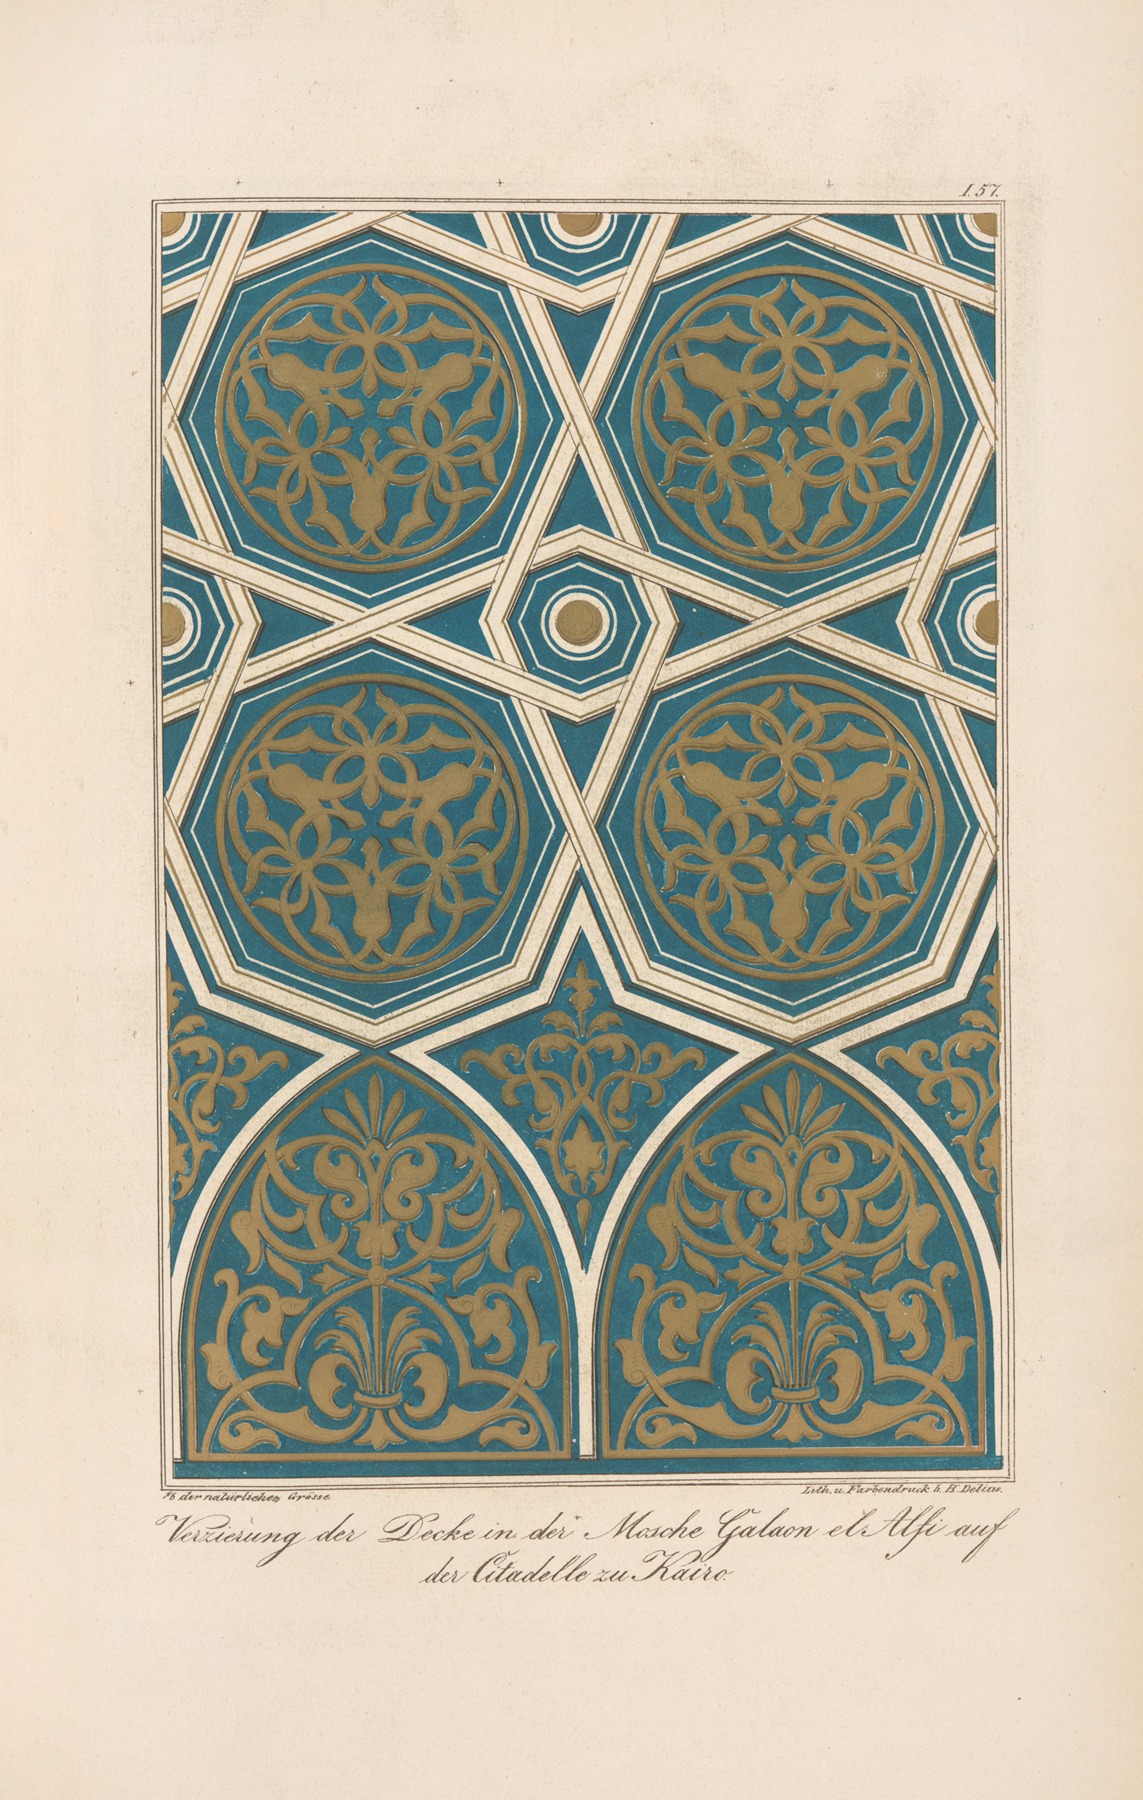 Friedrich Maximilian Hessemer - Verzierung der Decke in der Mosche Galaon el Alfi auf der Citadelle zu Kairo